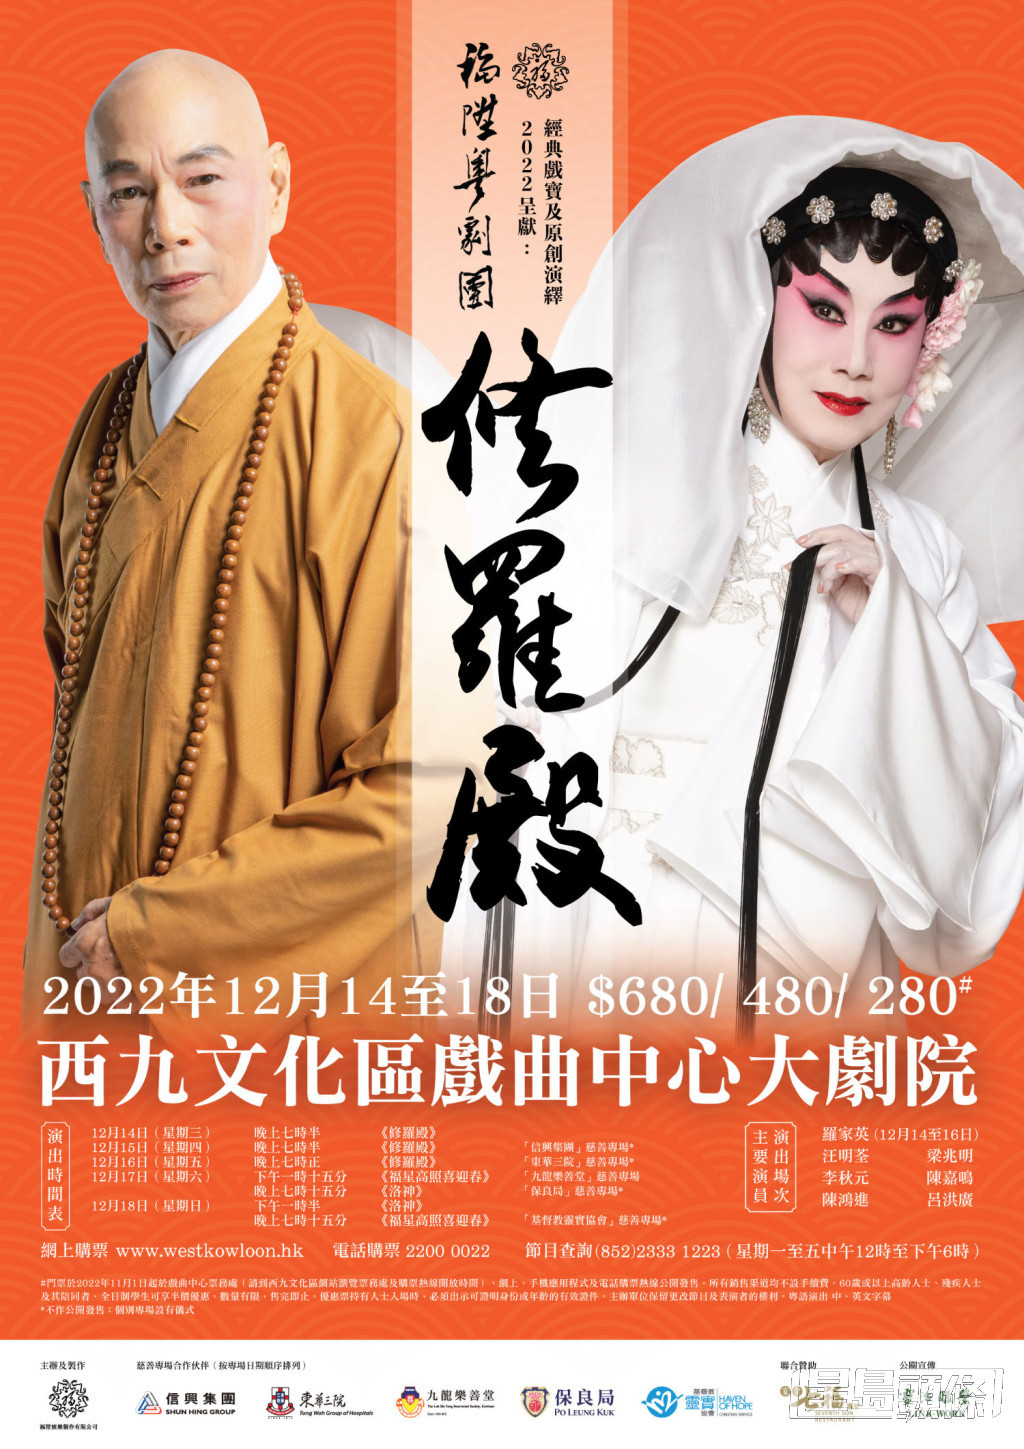 今年羅家英改編電影《羅生門》成為粵劇《修羅殿》。